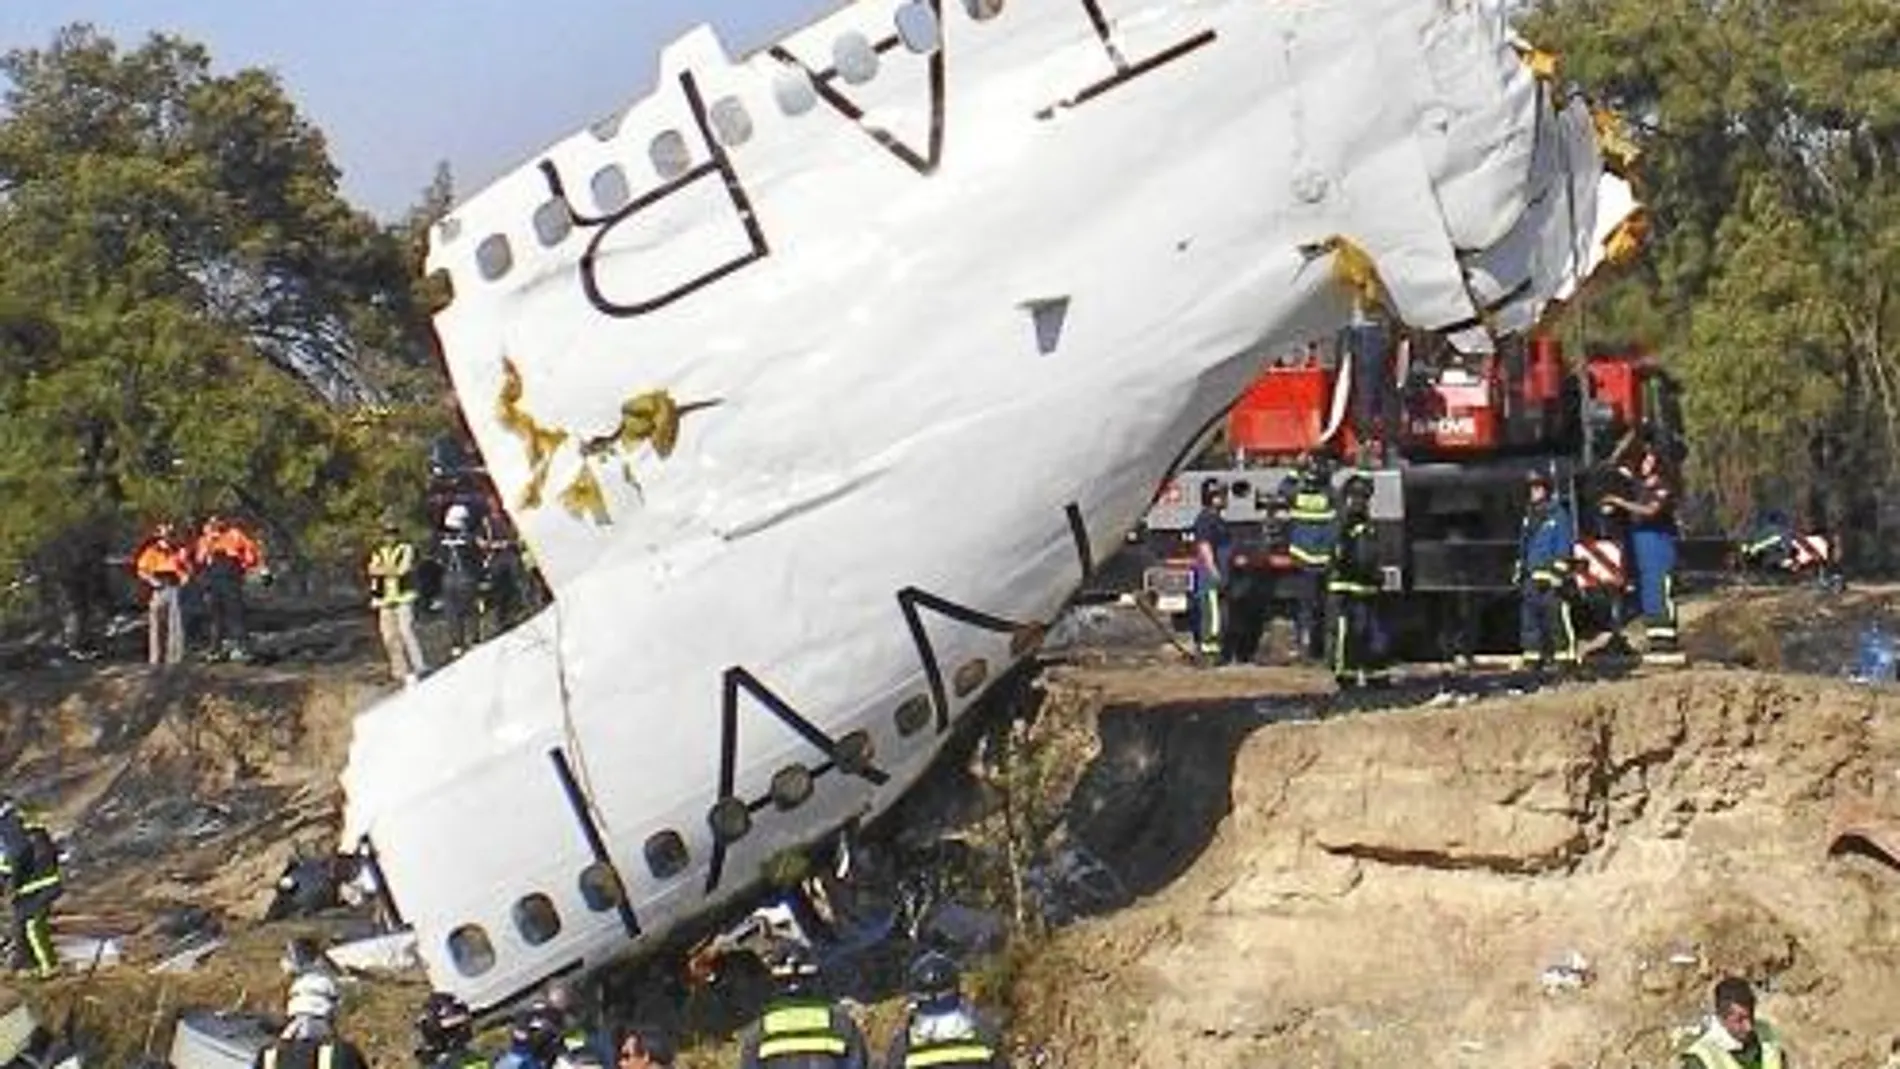 Imagen del avión de Spanair, un MD-82, siniestrado